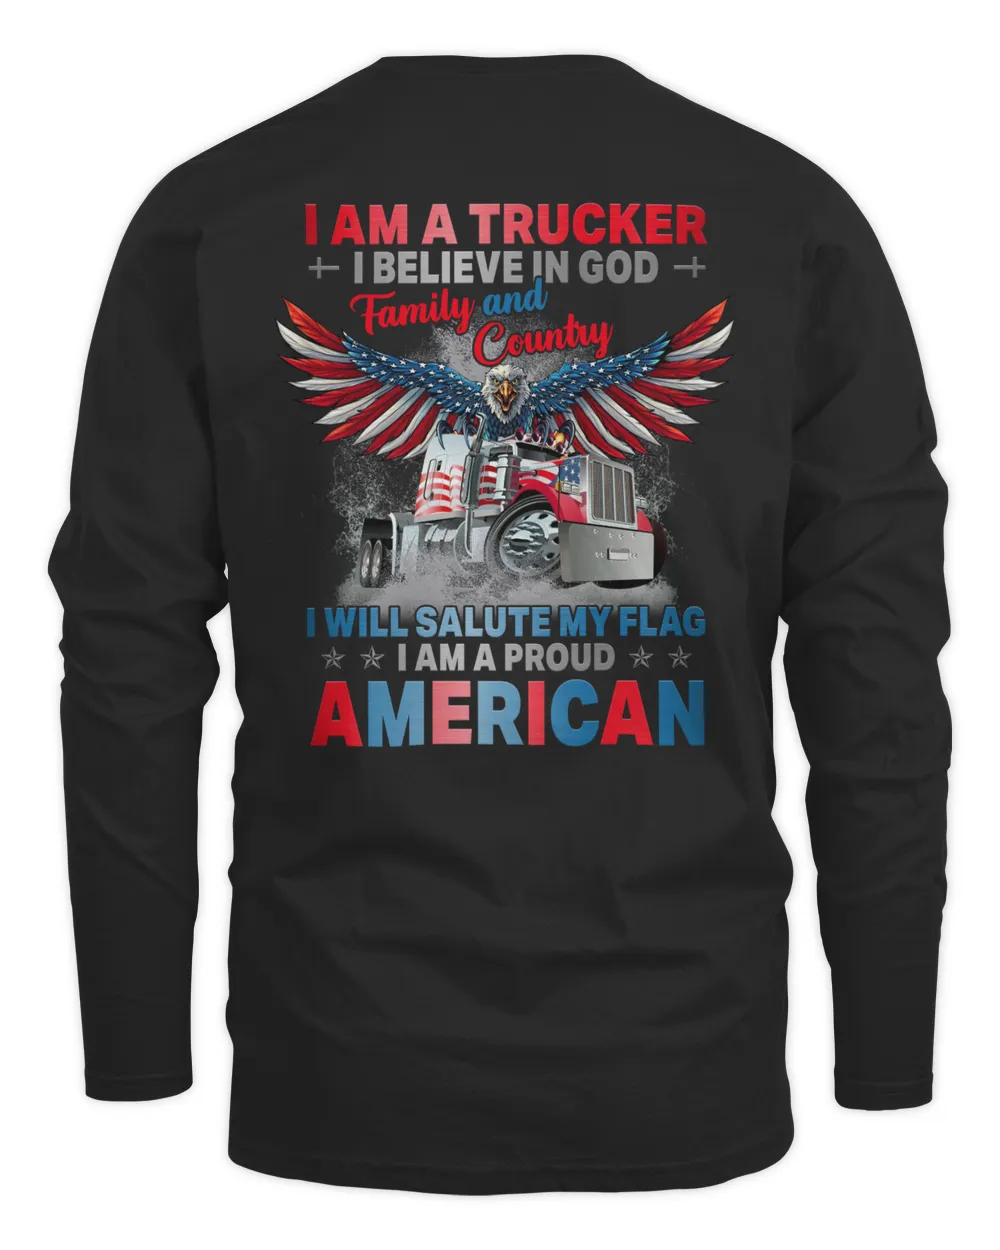 I Am a trucker